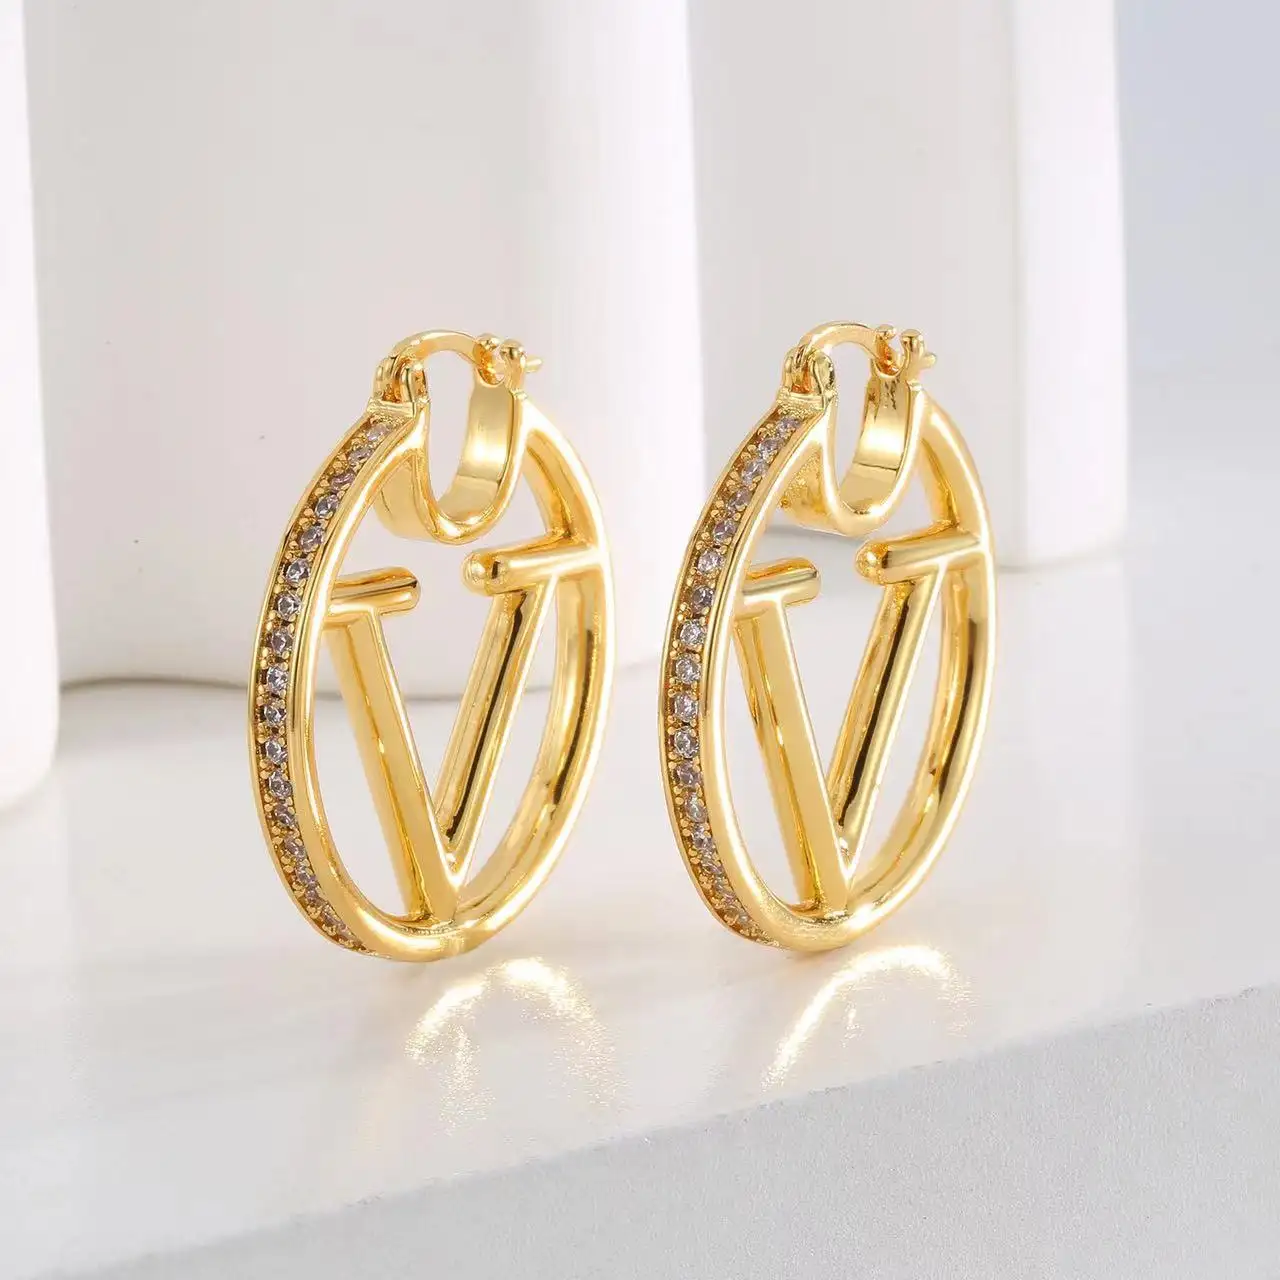 Yeni lüks moda tasarımcısı Premium stil 18k altın harf V küpe Hoop kristal küpe takı kadınlar için